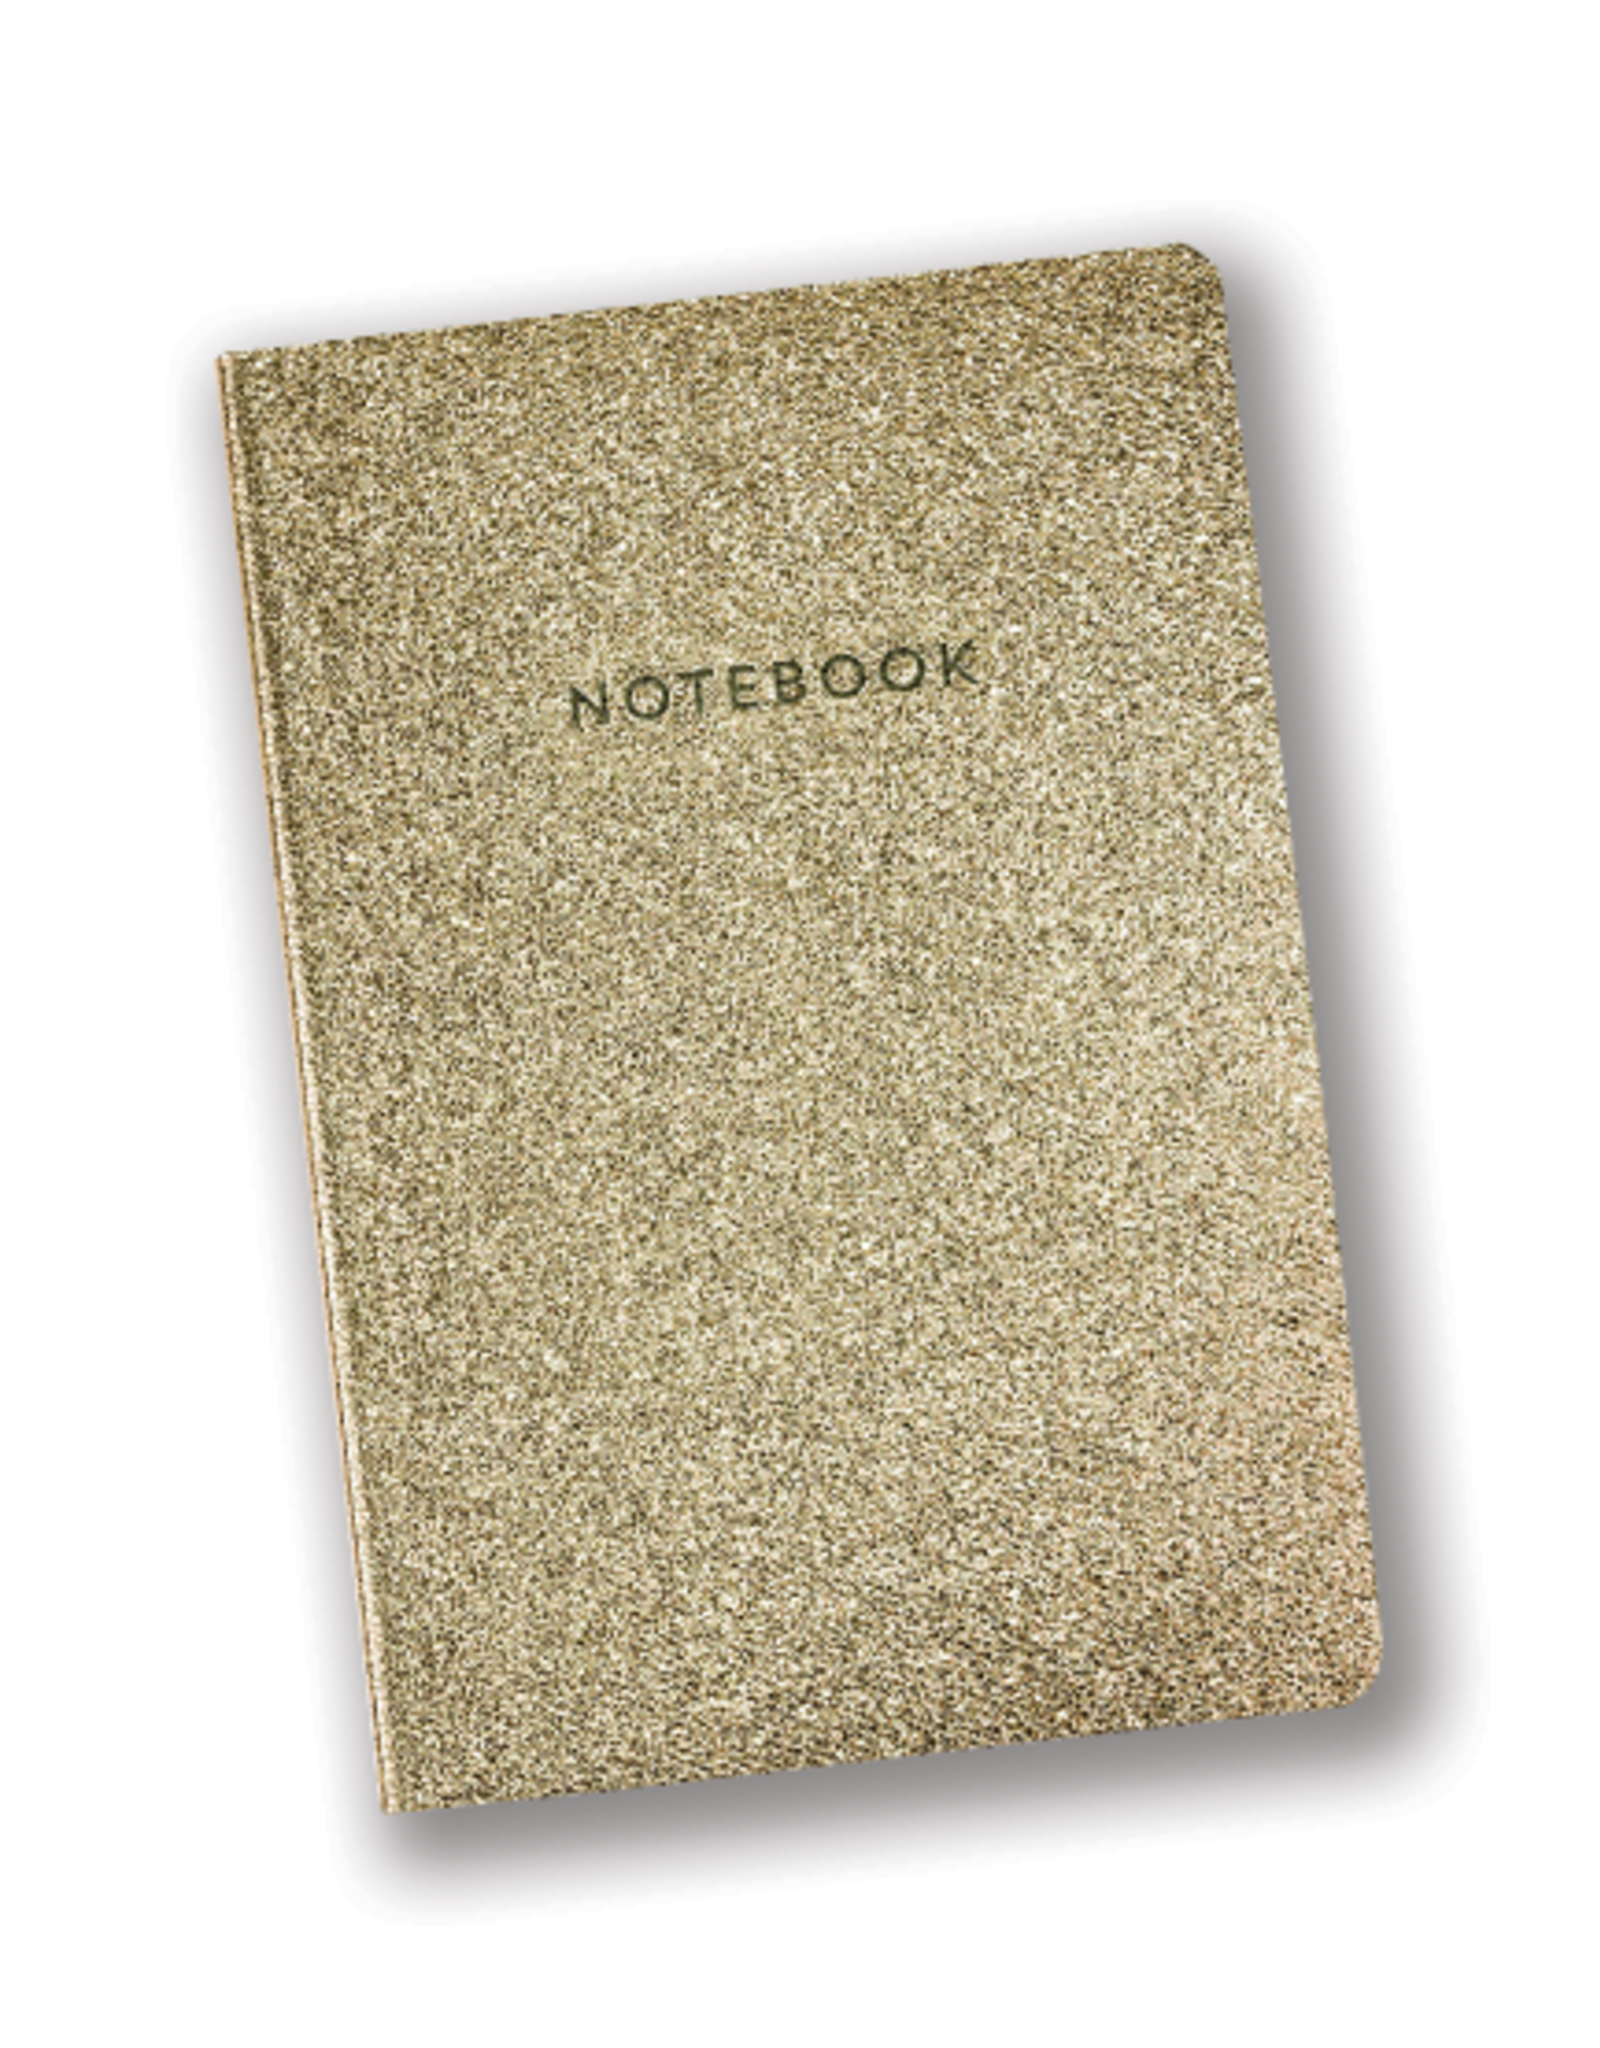 Eccolo "Notebook" Gold FlexiCover Journal